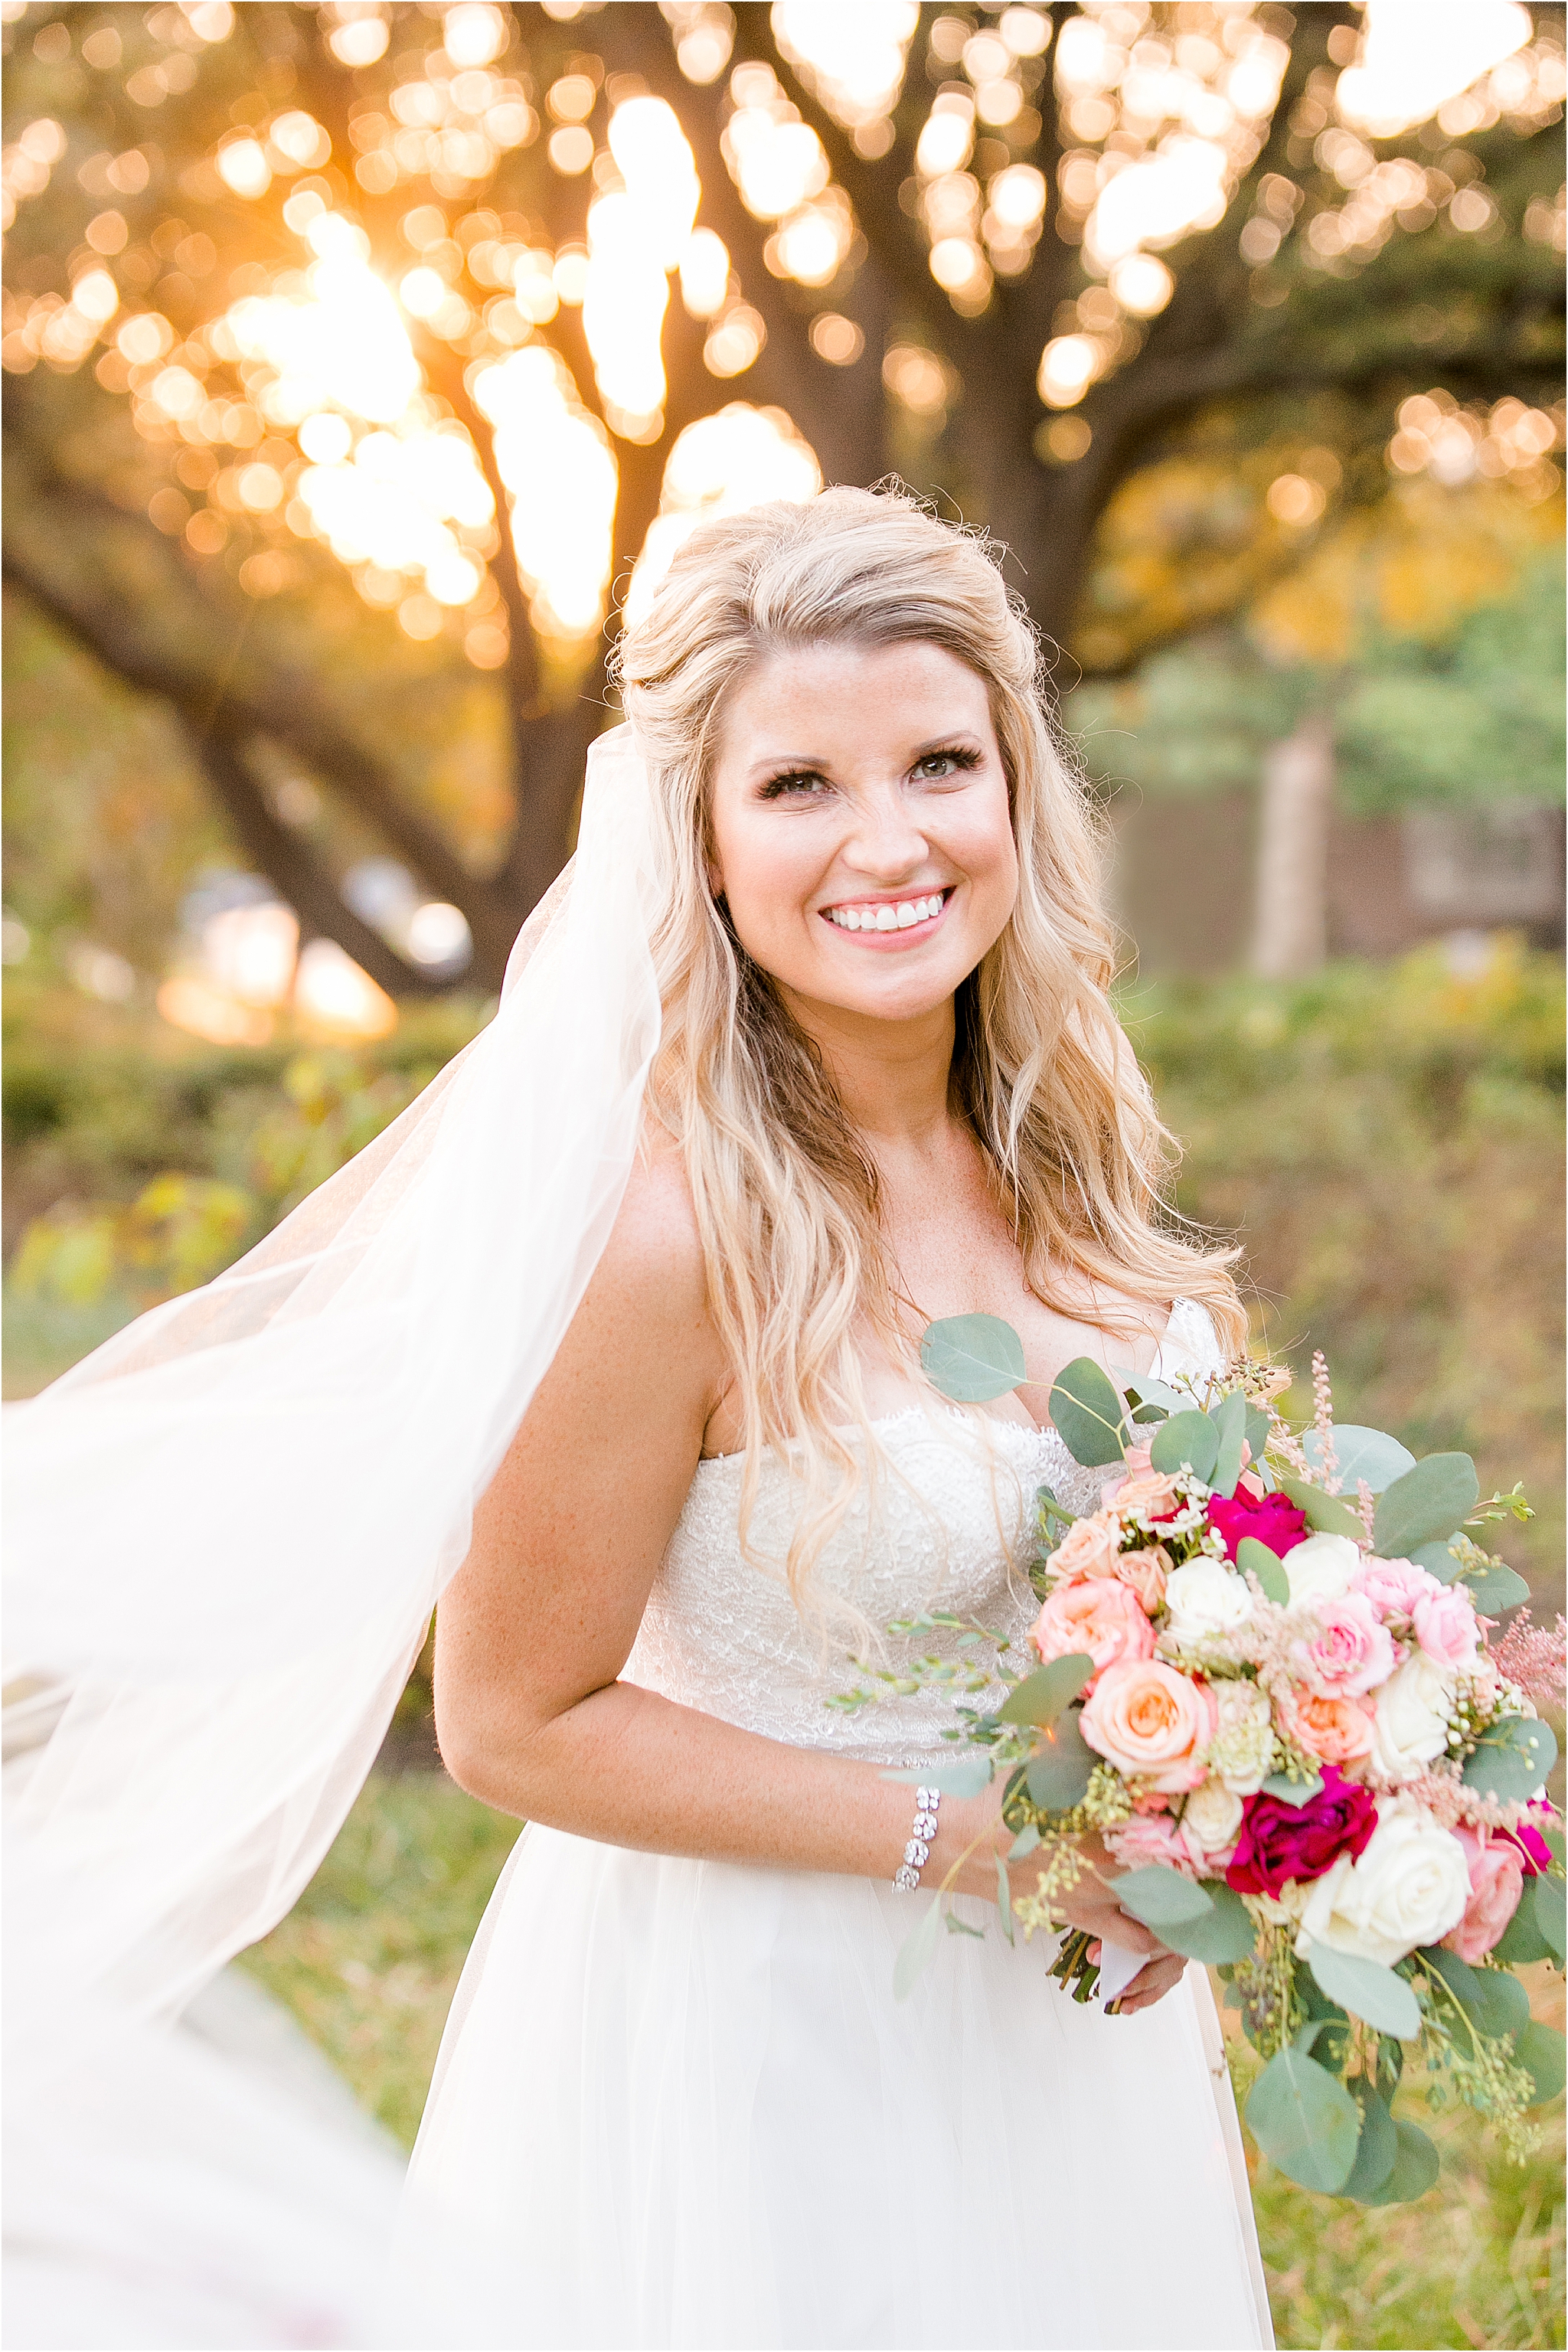 Bridal Photography in Dallas TX by DFW Wedding Photographer Jillian Hogan 